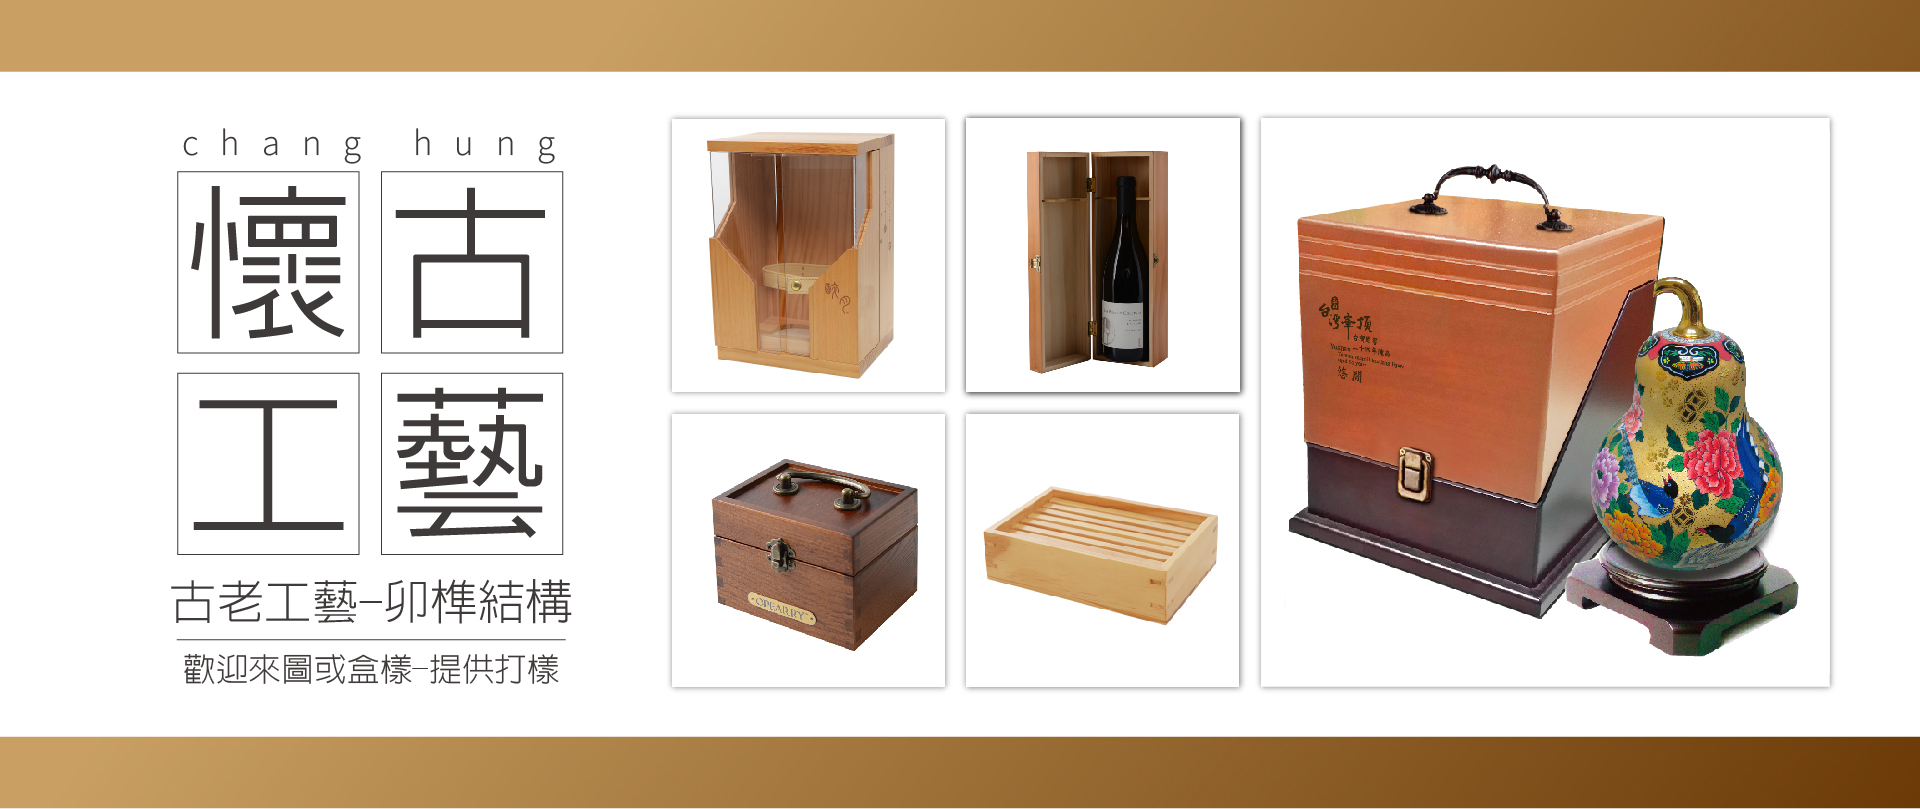 精湛工藝和風雅情趣木盒  長虹木製品